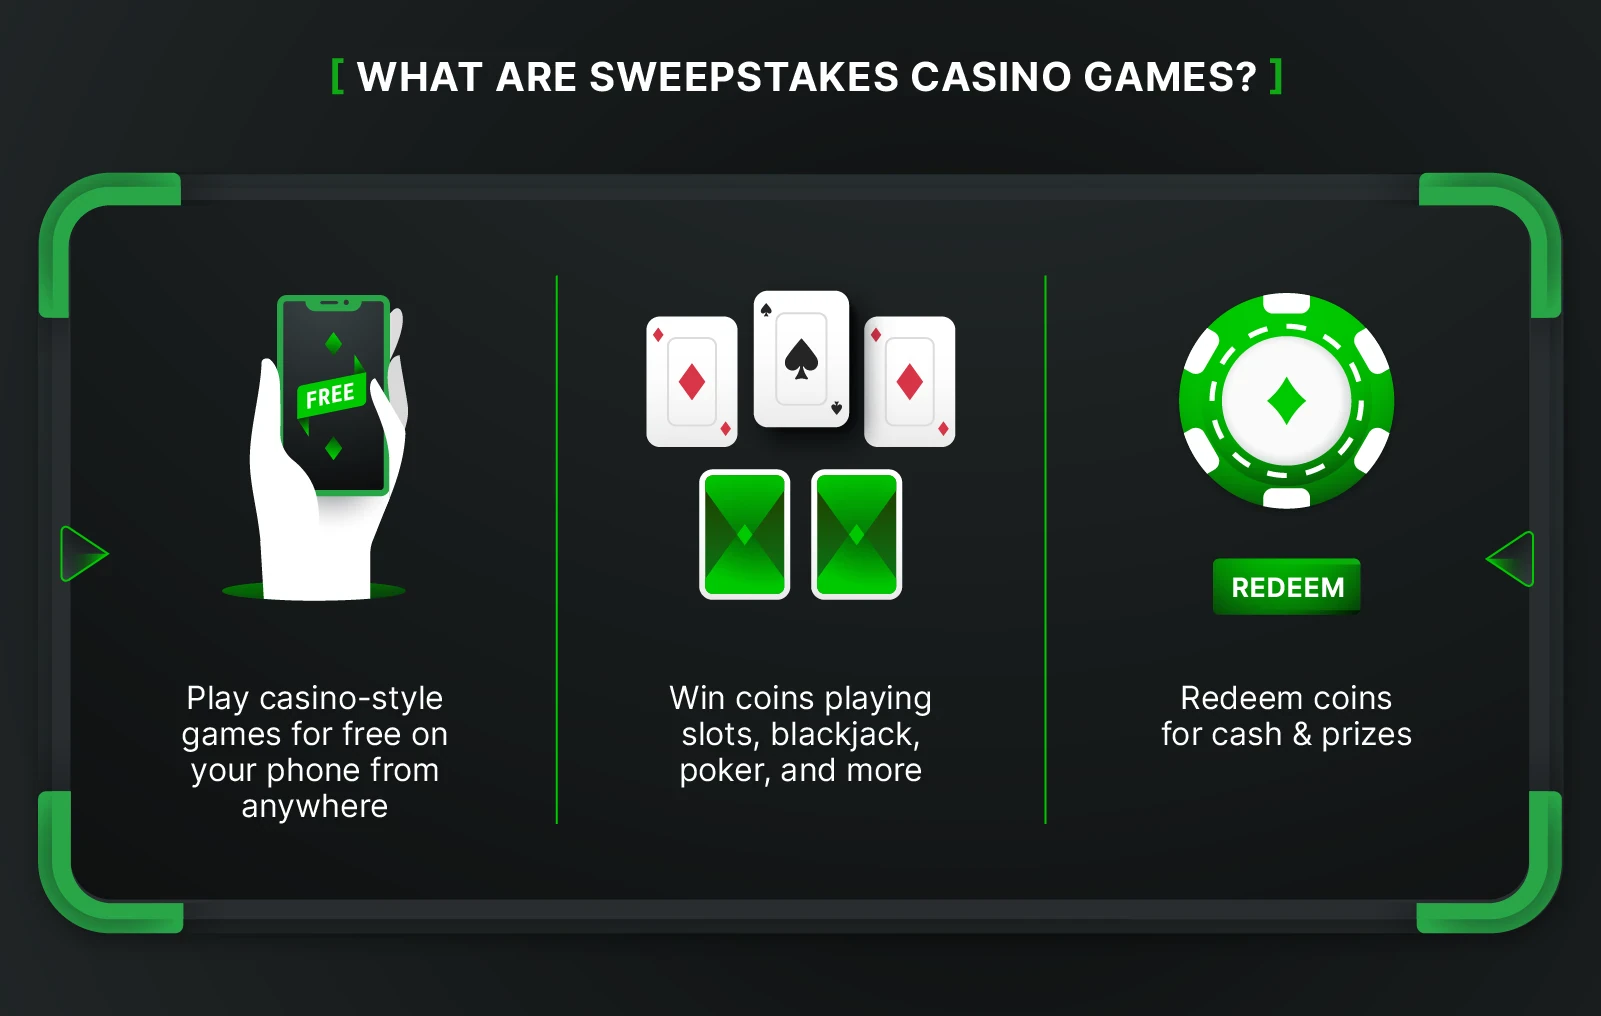 Illustration explaining exactly how sweepstakes casinos work